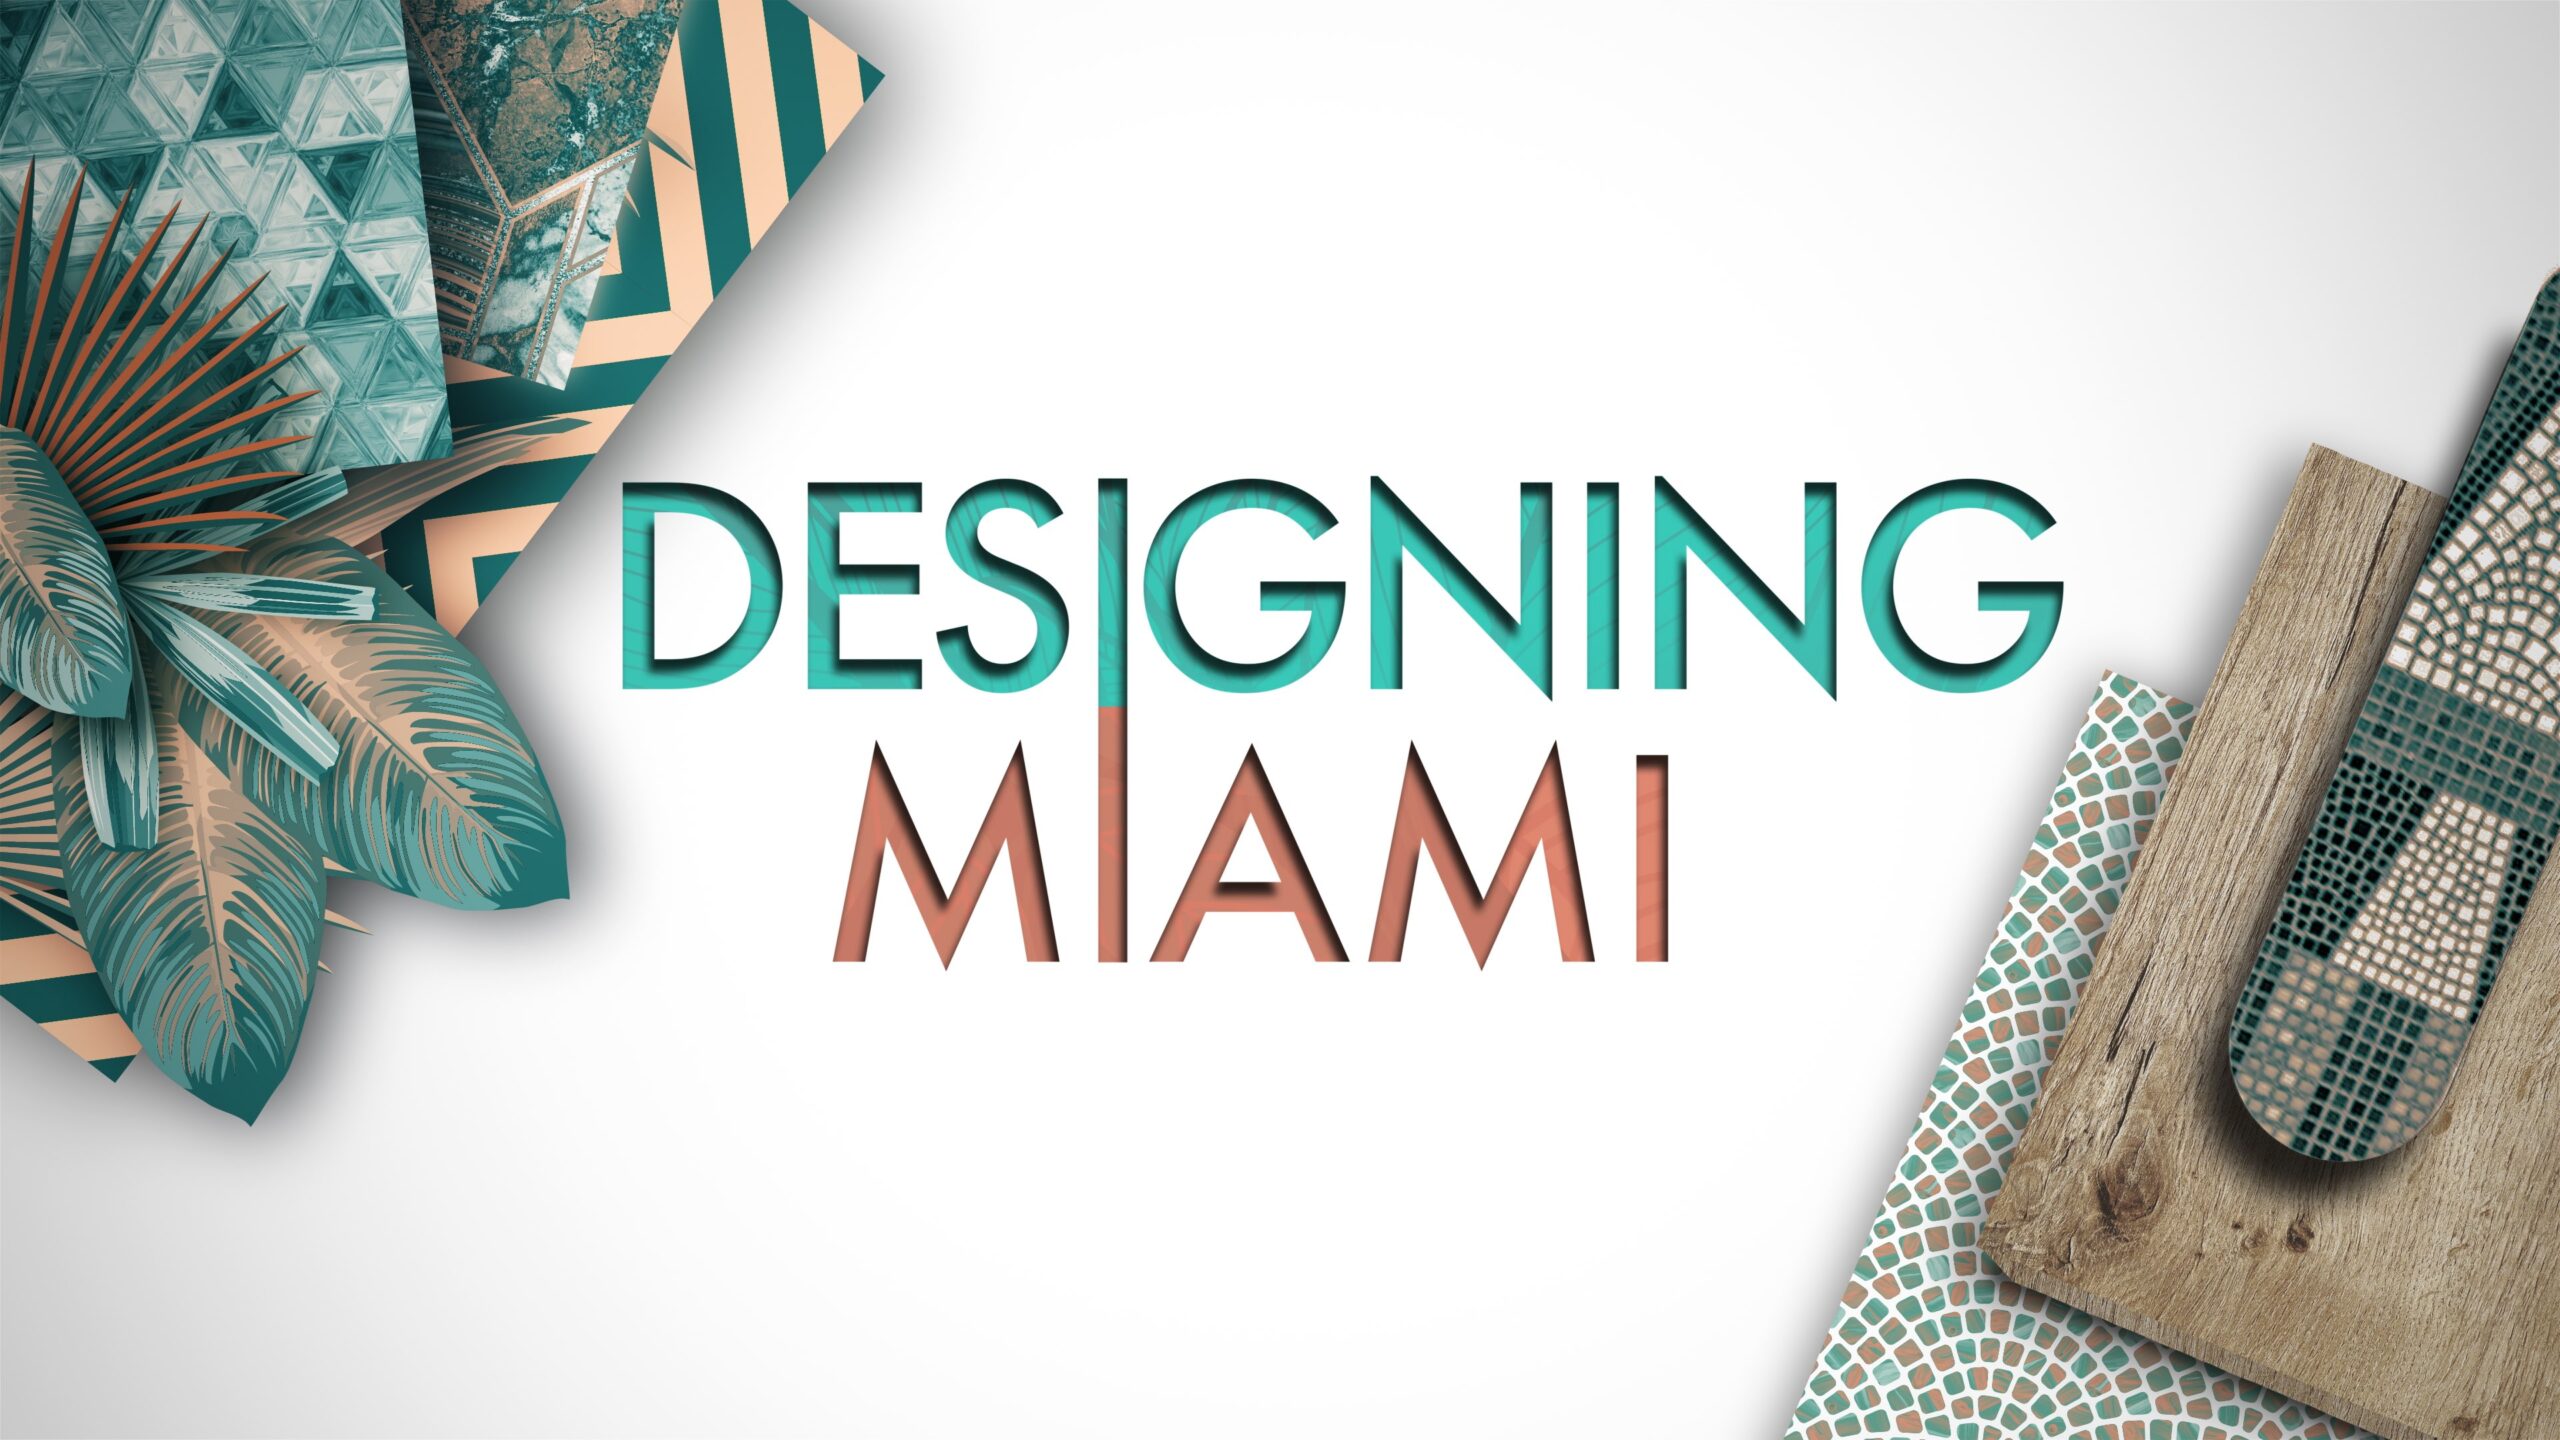 Designing Miami